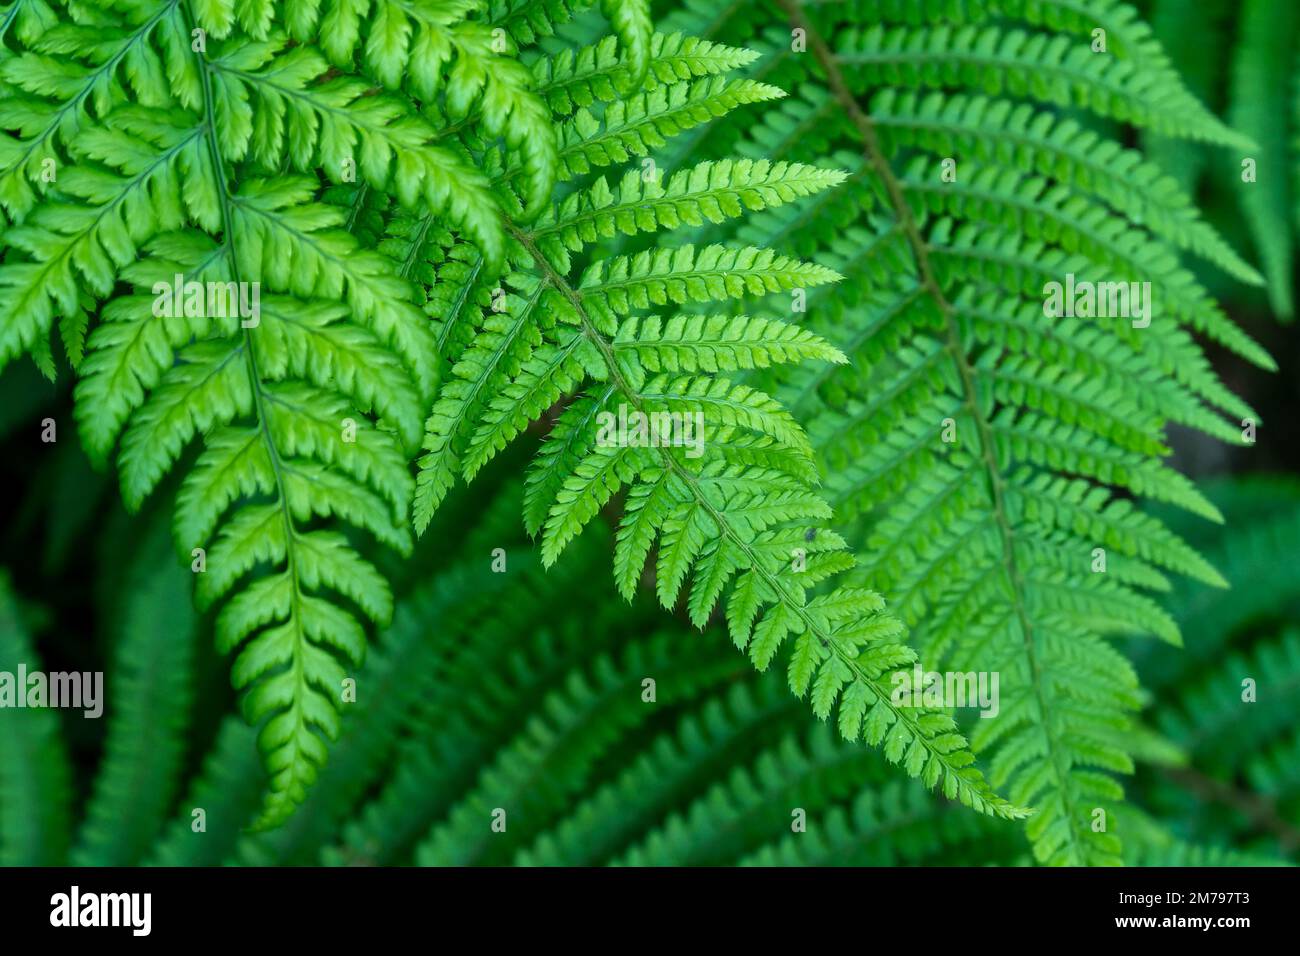 Schöne Blätter eines Farns, Nahaufnahme. Dichtes grünes Laub, Makro. Grünfarnpflanze in Nahaufnahme Stockfoto